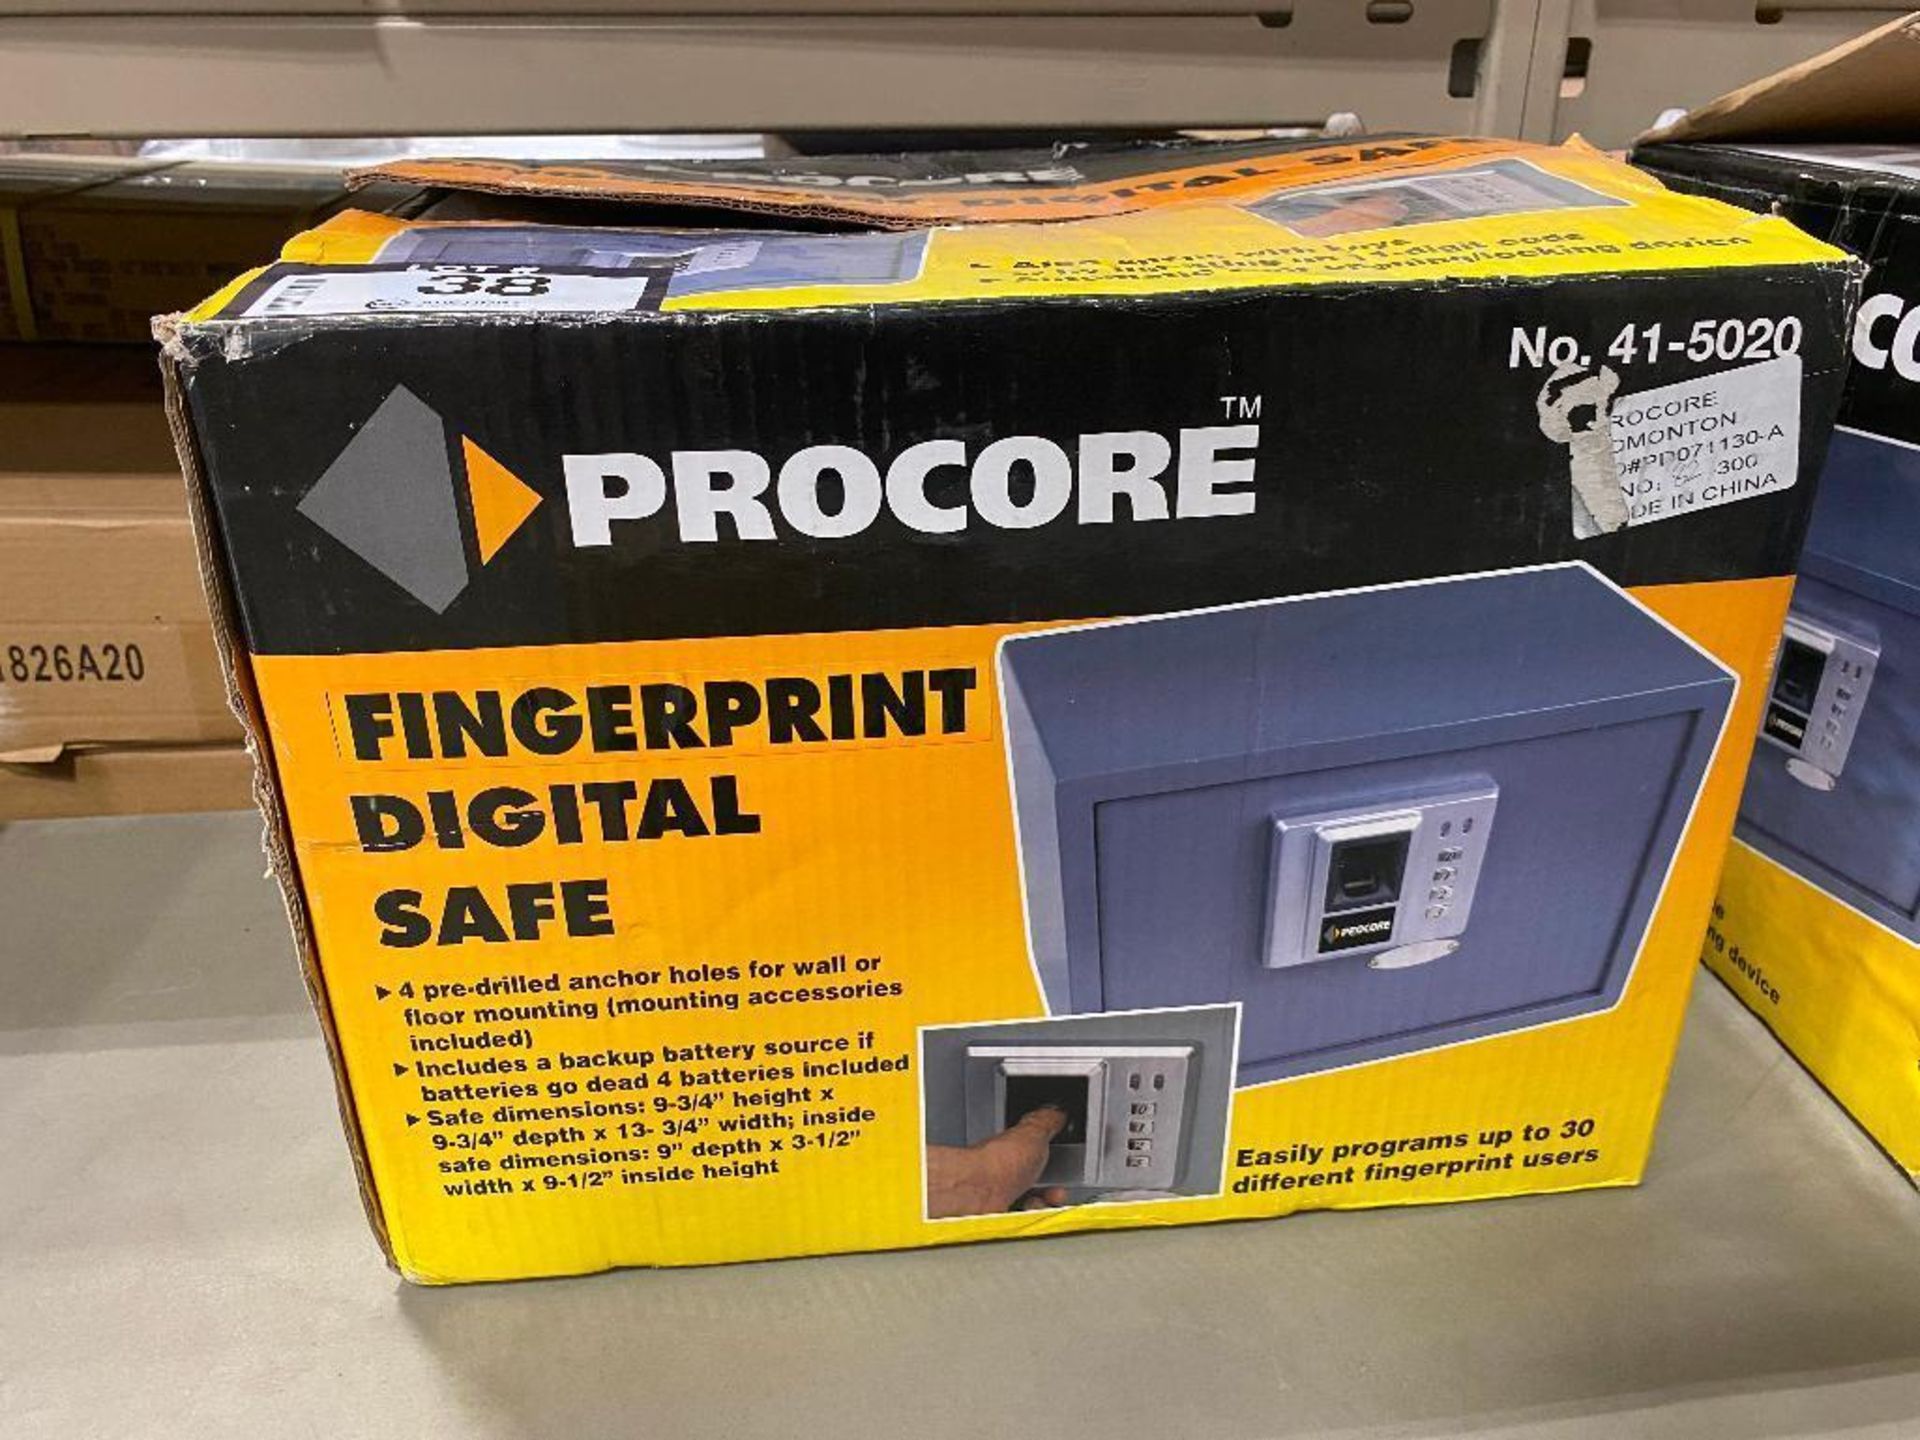 Procore Fingerprint Digital Safe - Image 2 of 2